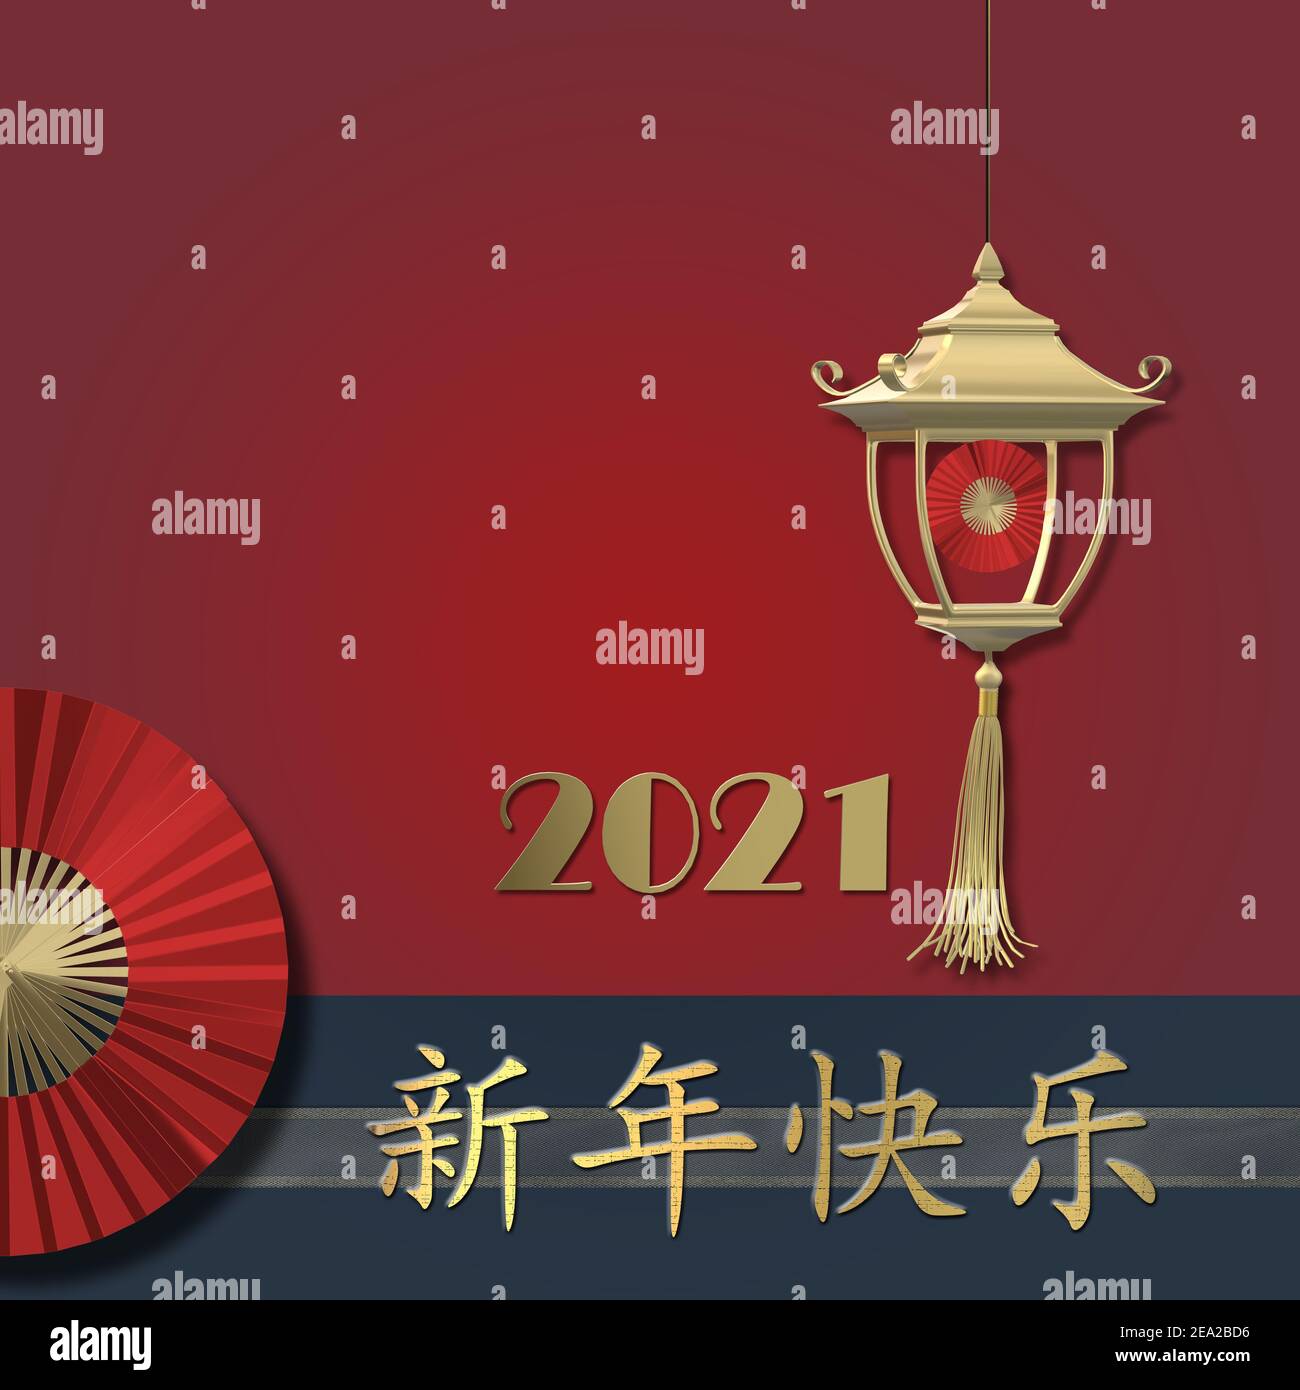 Nouvel an chinois 2021 sur fond bleu rouge. Texte doré bon nouvel an chinois, chiffre 2021, ventilateur, lanterne dorée. Design pour les salutations, nouveau vous oriental Banque D'Images